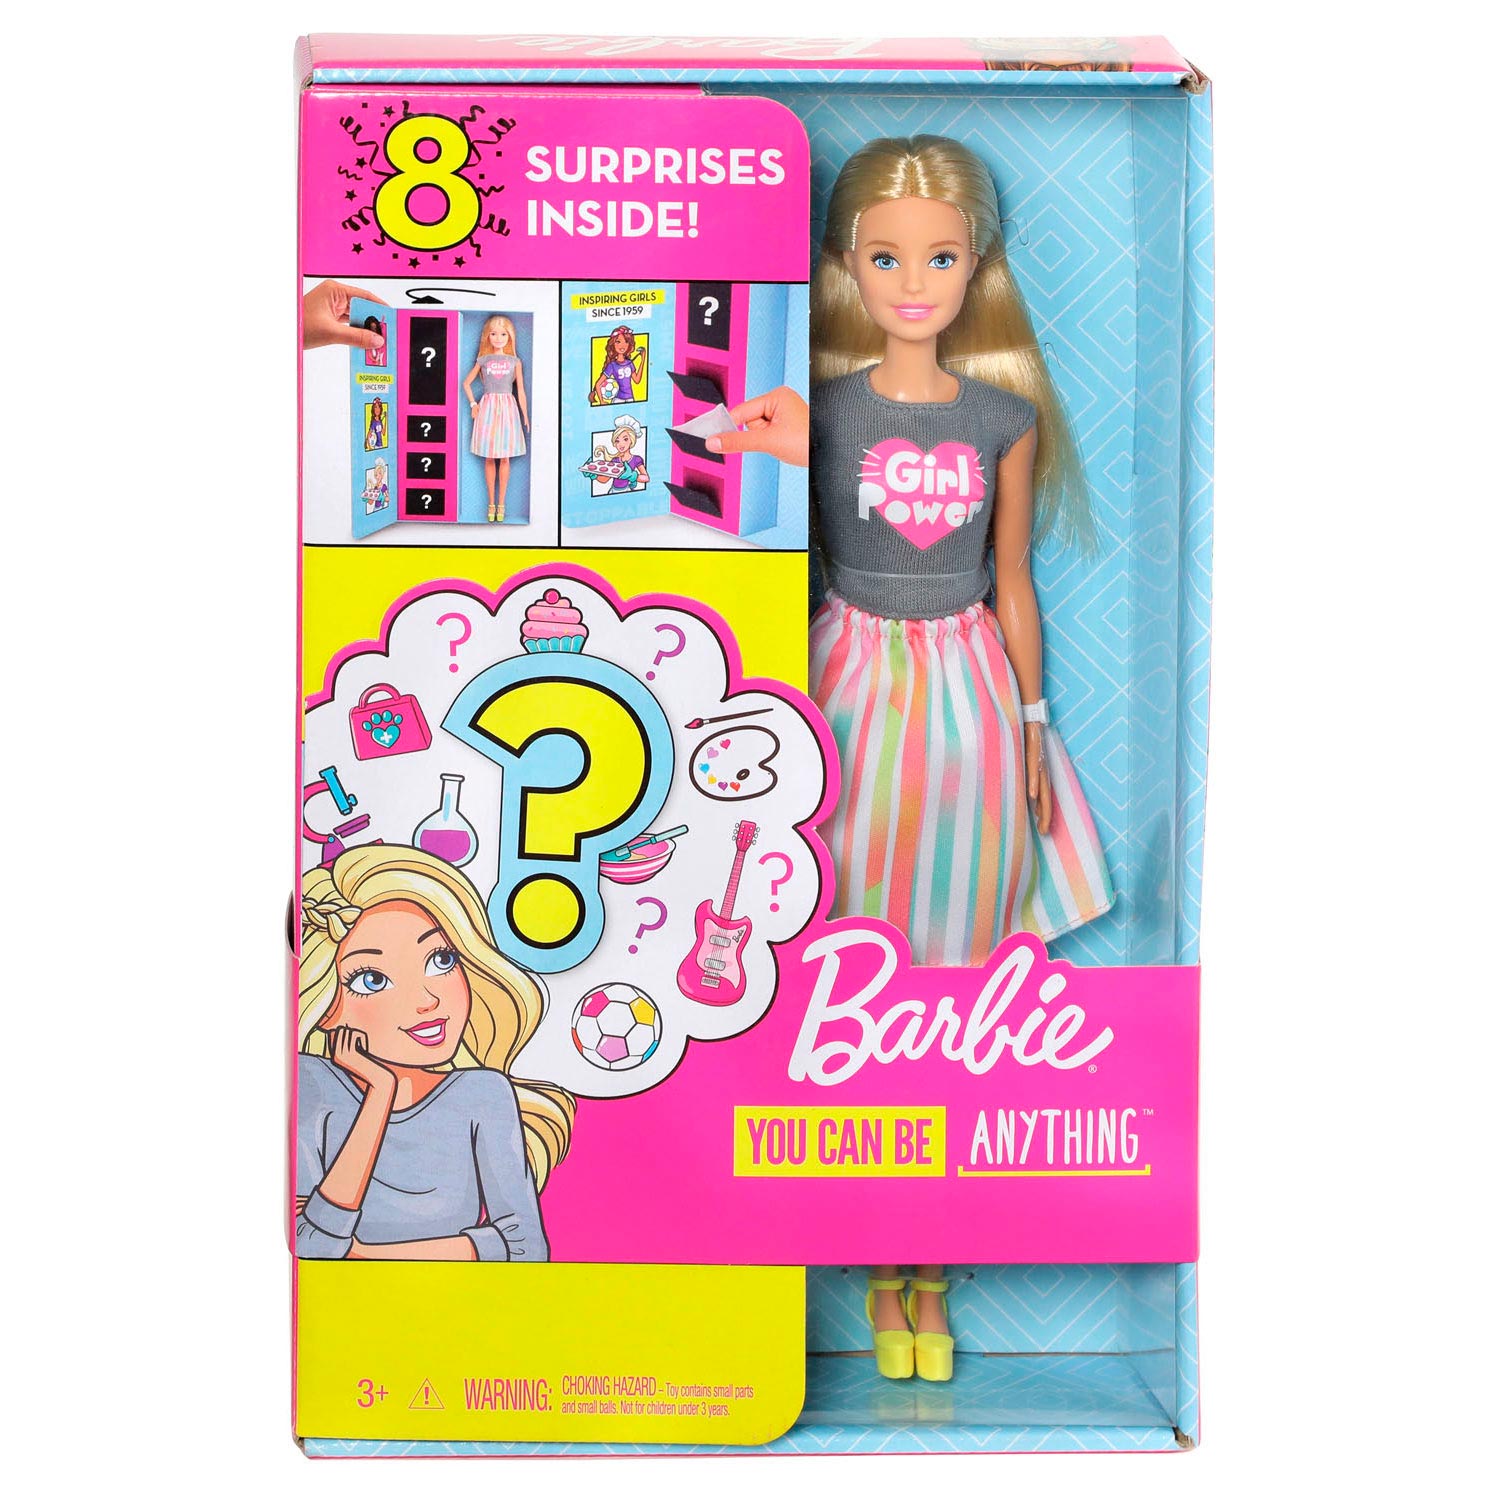 Barbie Carriere Pop met Verrassingsoutfit